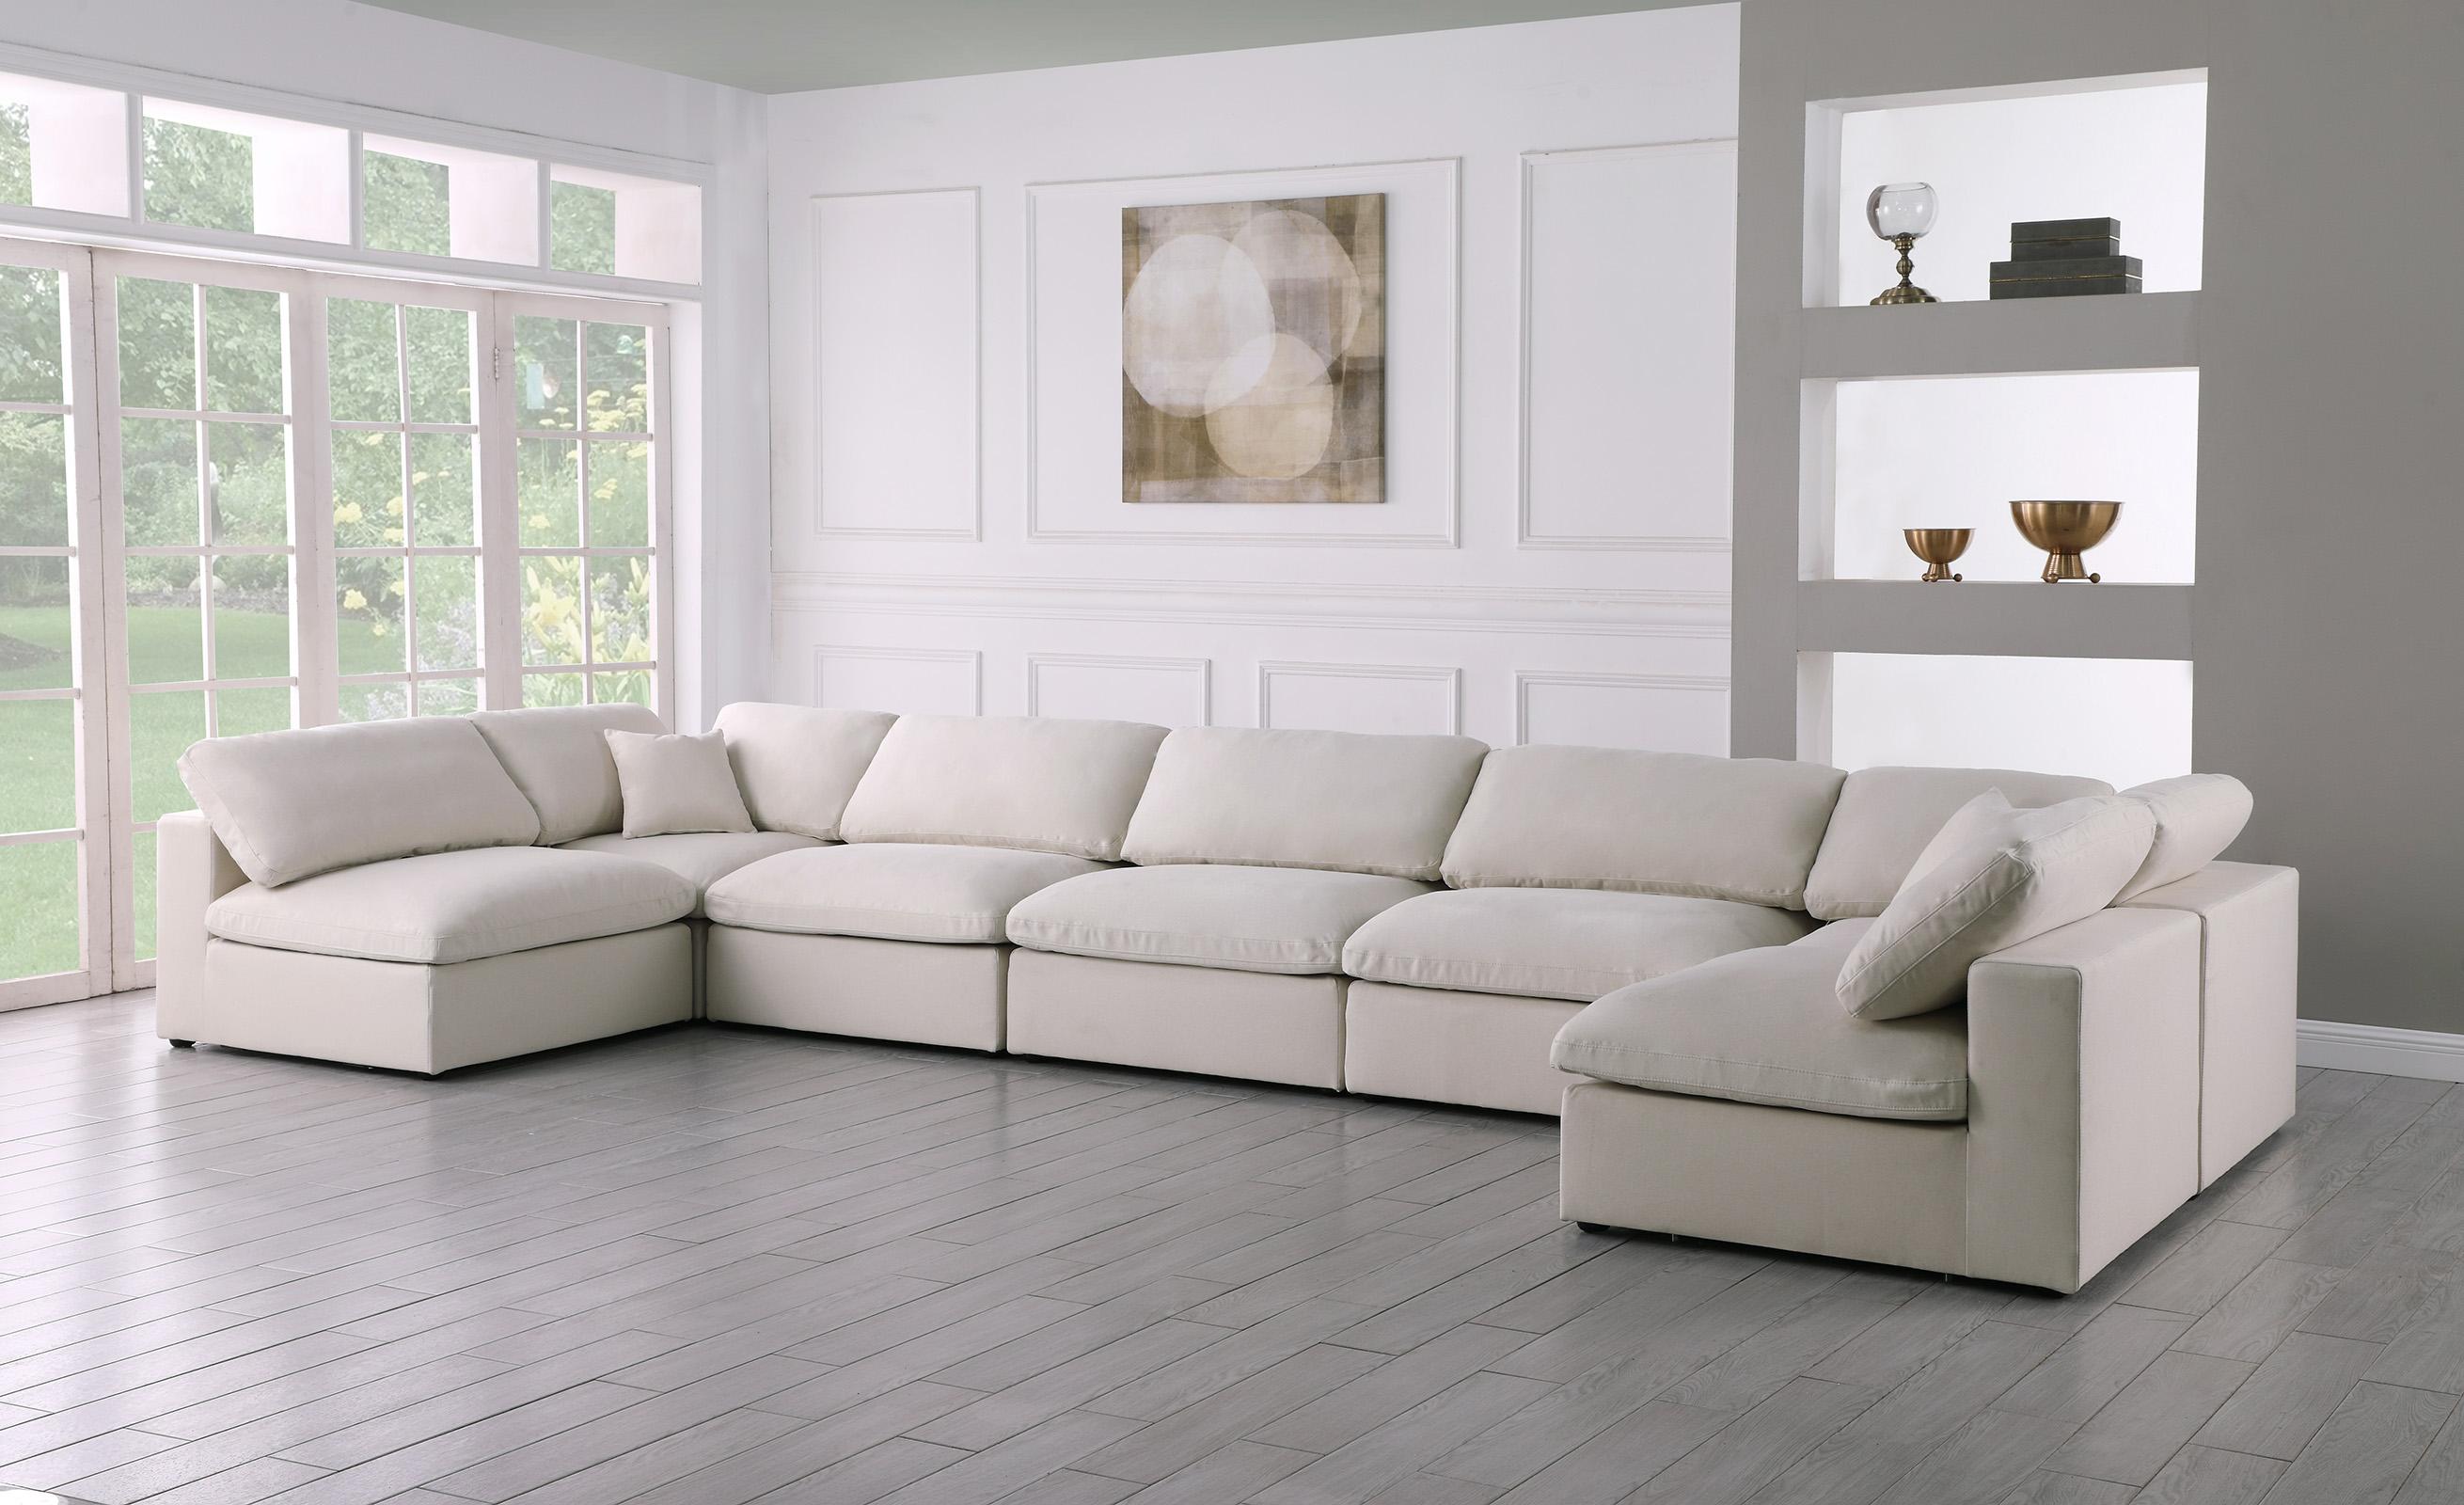 

    
Meridian Furniture 602Cream-Sec7B Modular Sectional Sofa Cream 602Cream-Sec7B
